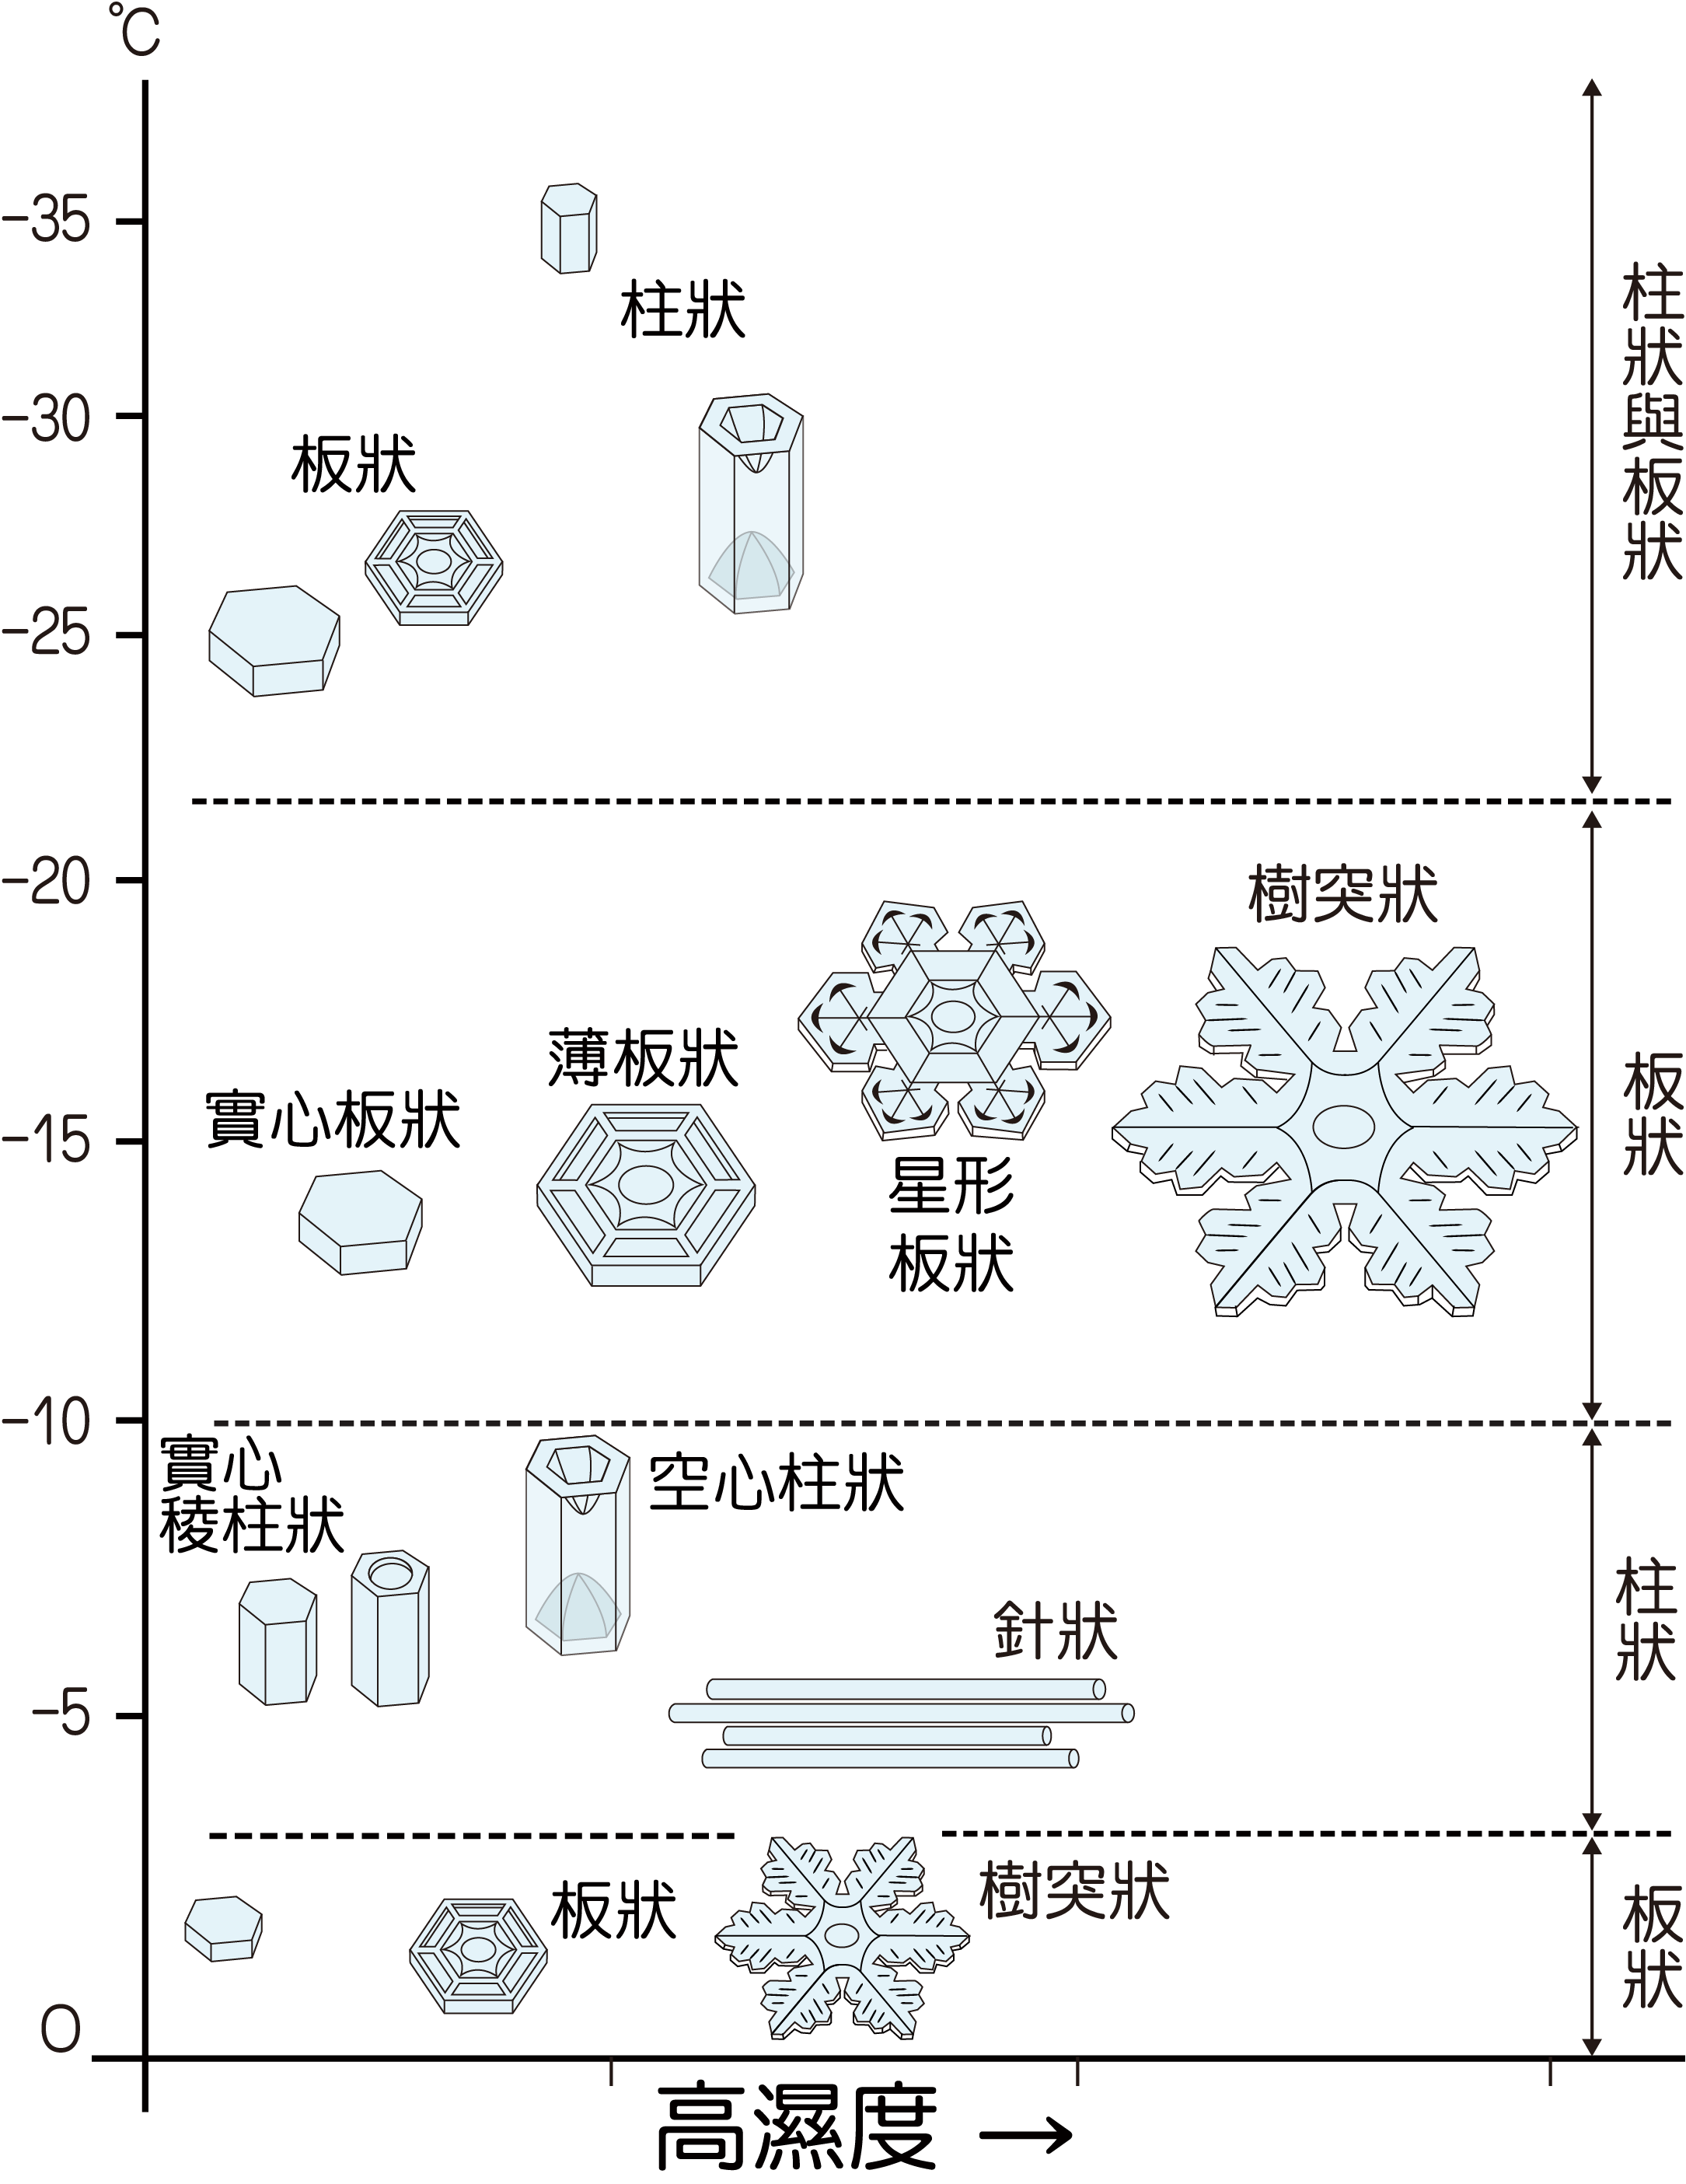 雪的形狀會根據結晶時的溫度與水氣的飽和程度，而生長出不同的形狀。